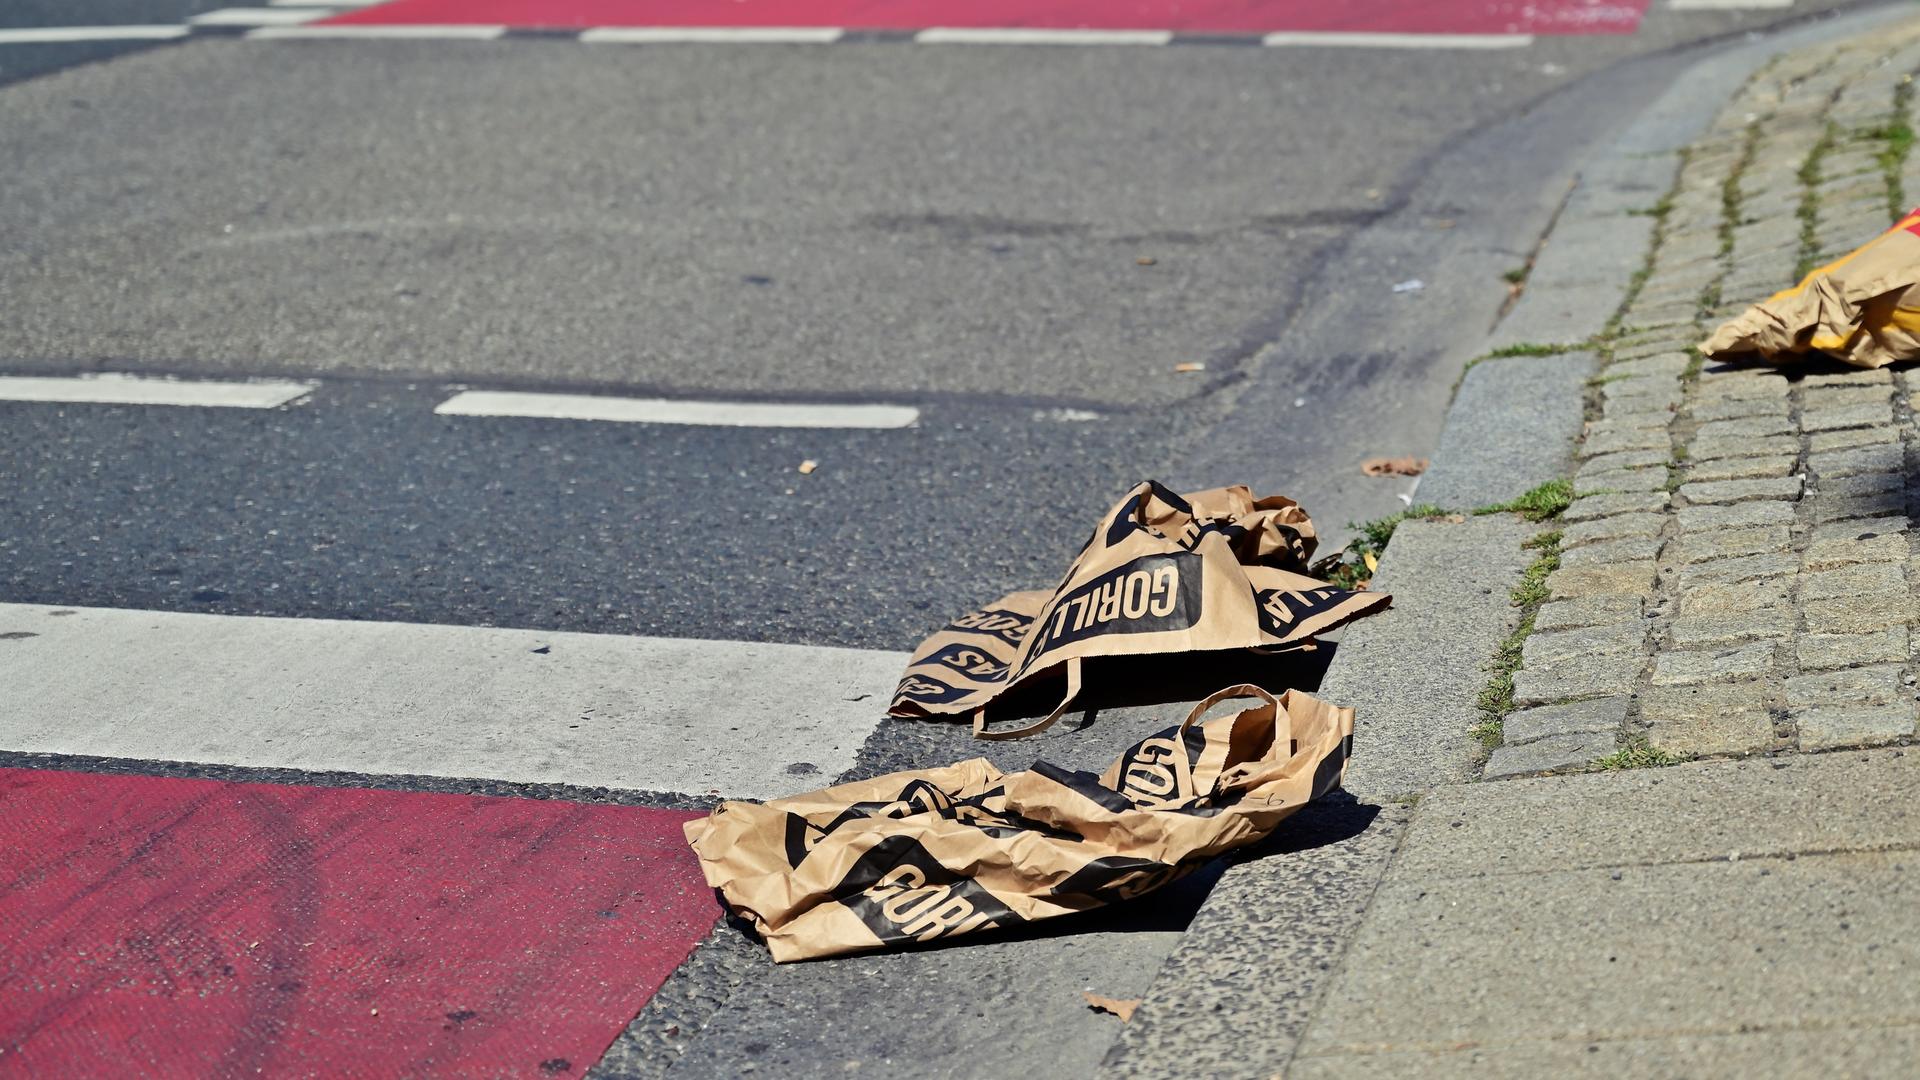 Leere Tüten des 2020 Gegründeten Lieferdienstes "Gorillas" liegen weggeworfen auf der Straße.